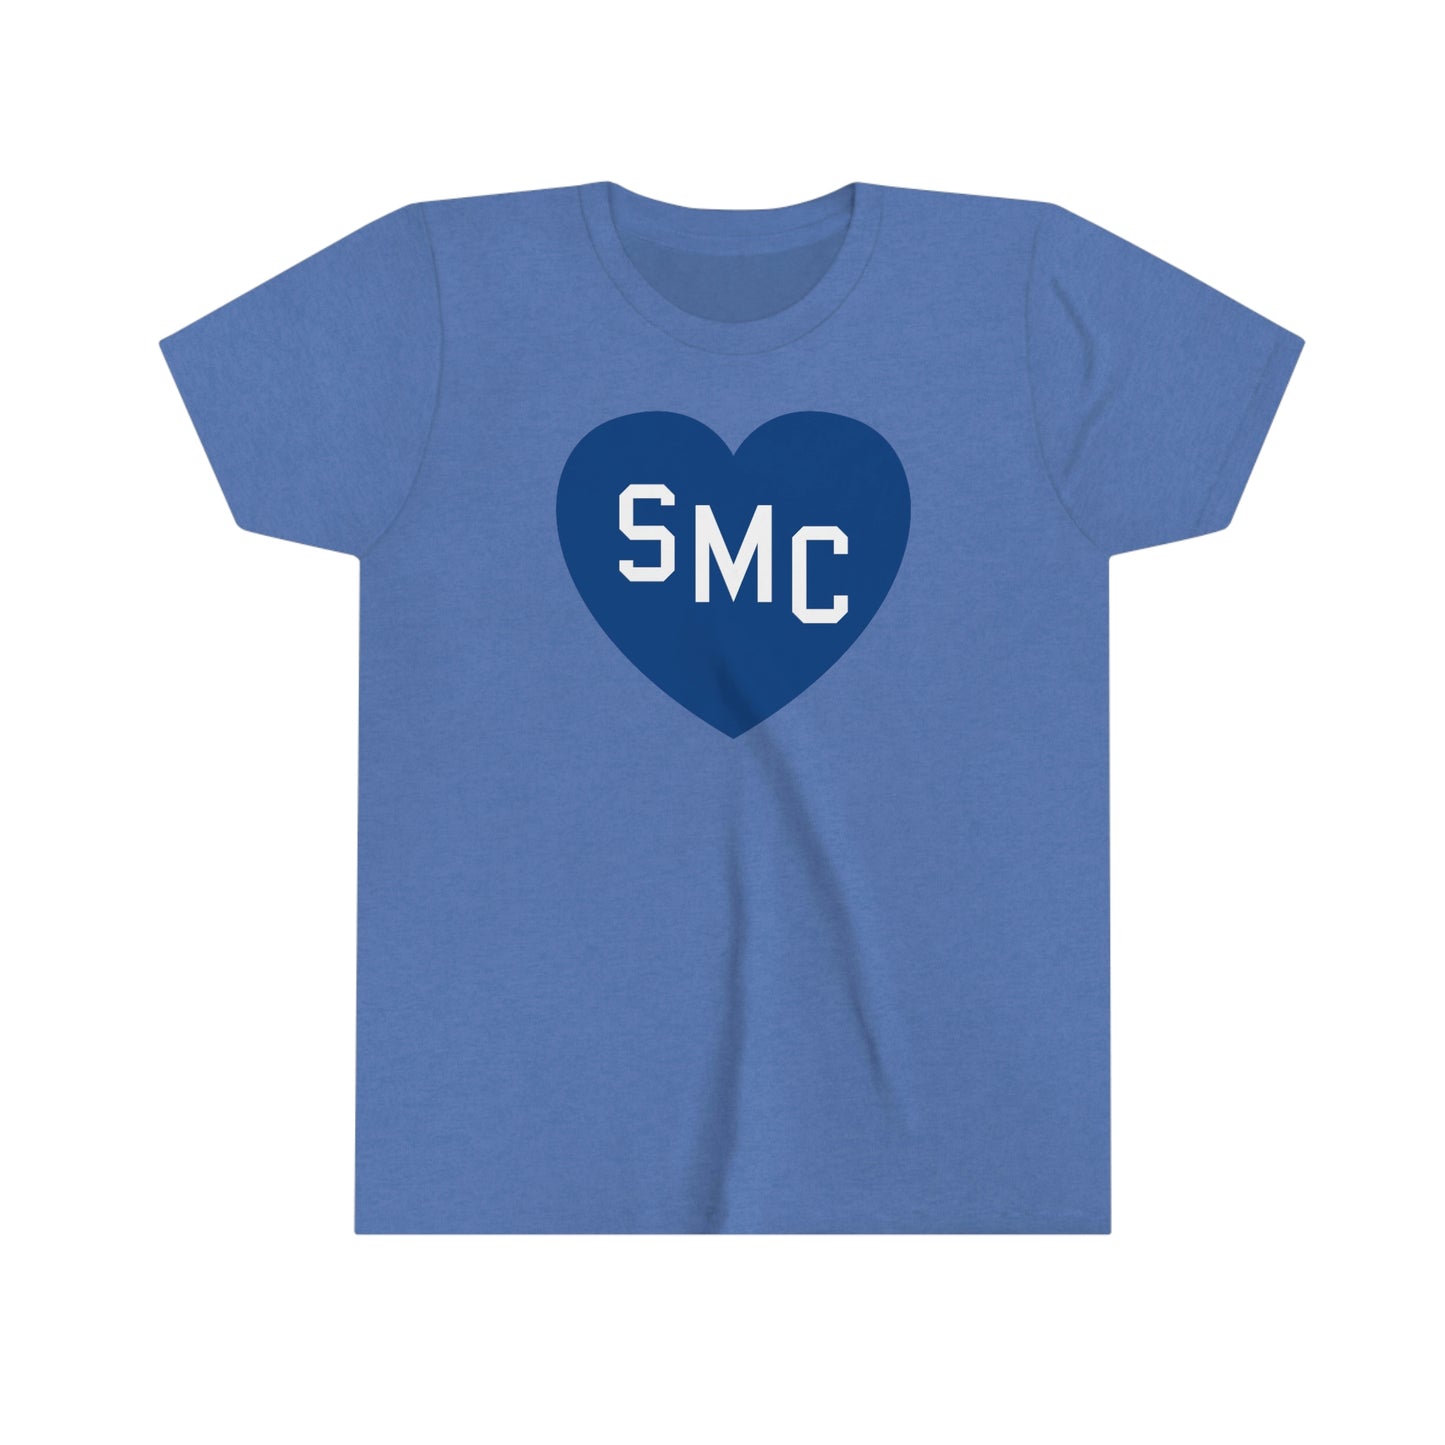 SMC Heart Youth Tee